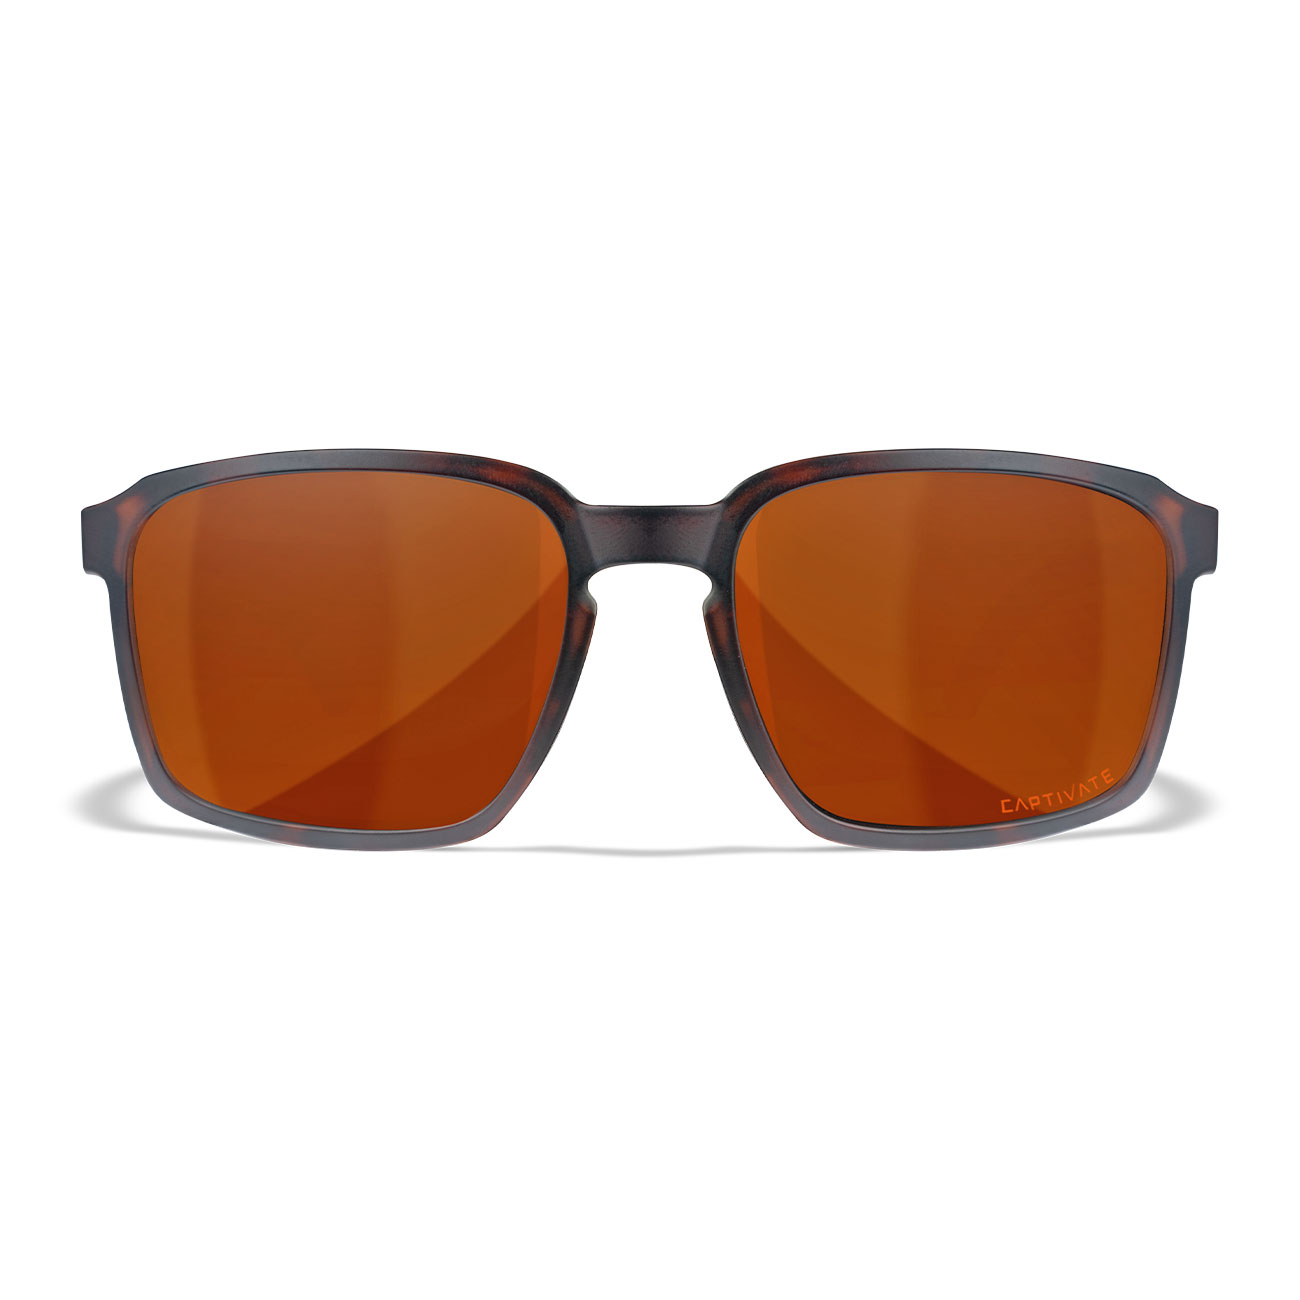 Wiley X Sonnenbrille Alfa Captivate matt braun Glser kupfer polarisiert inkl. Brillenetui und Seitenschutz Bild 1